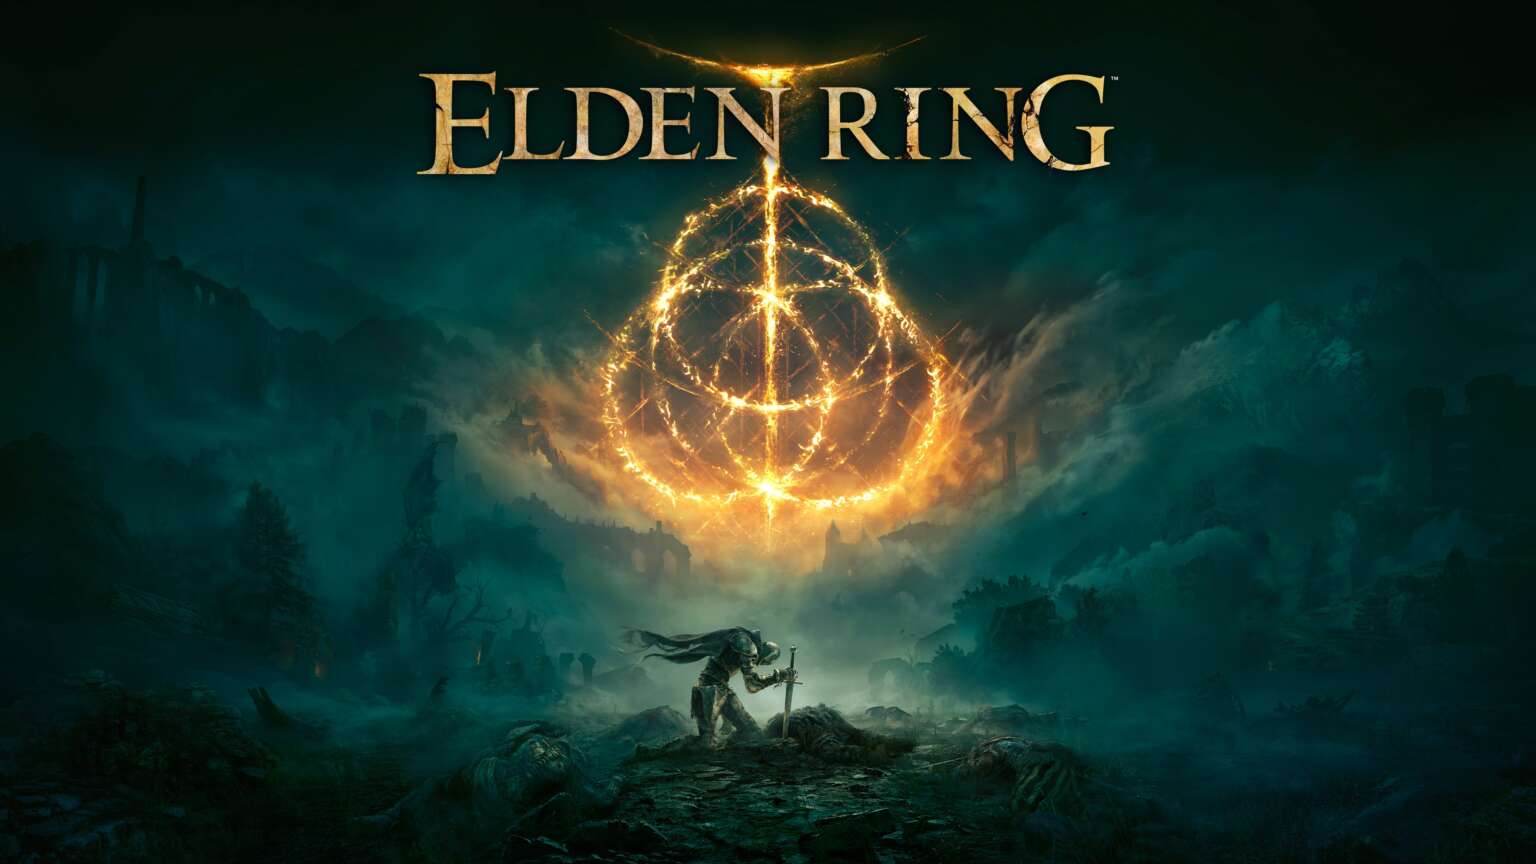 Dark Souls fans on Elden Ring being a sequel TheNerdMag